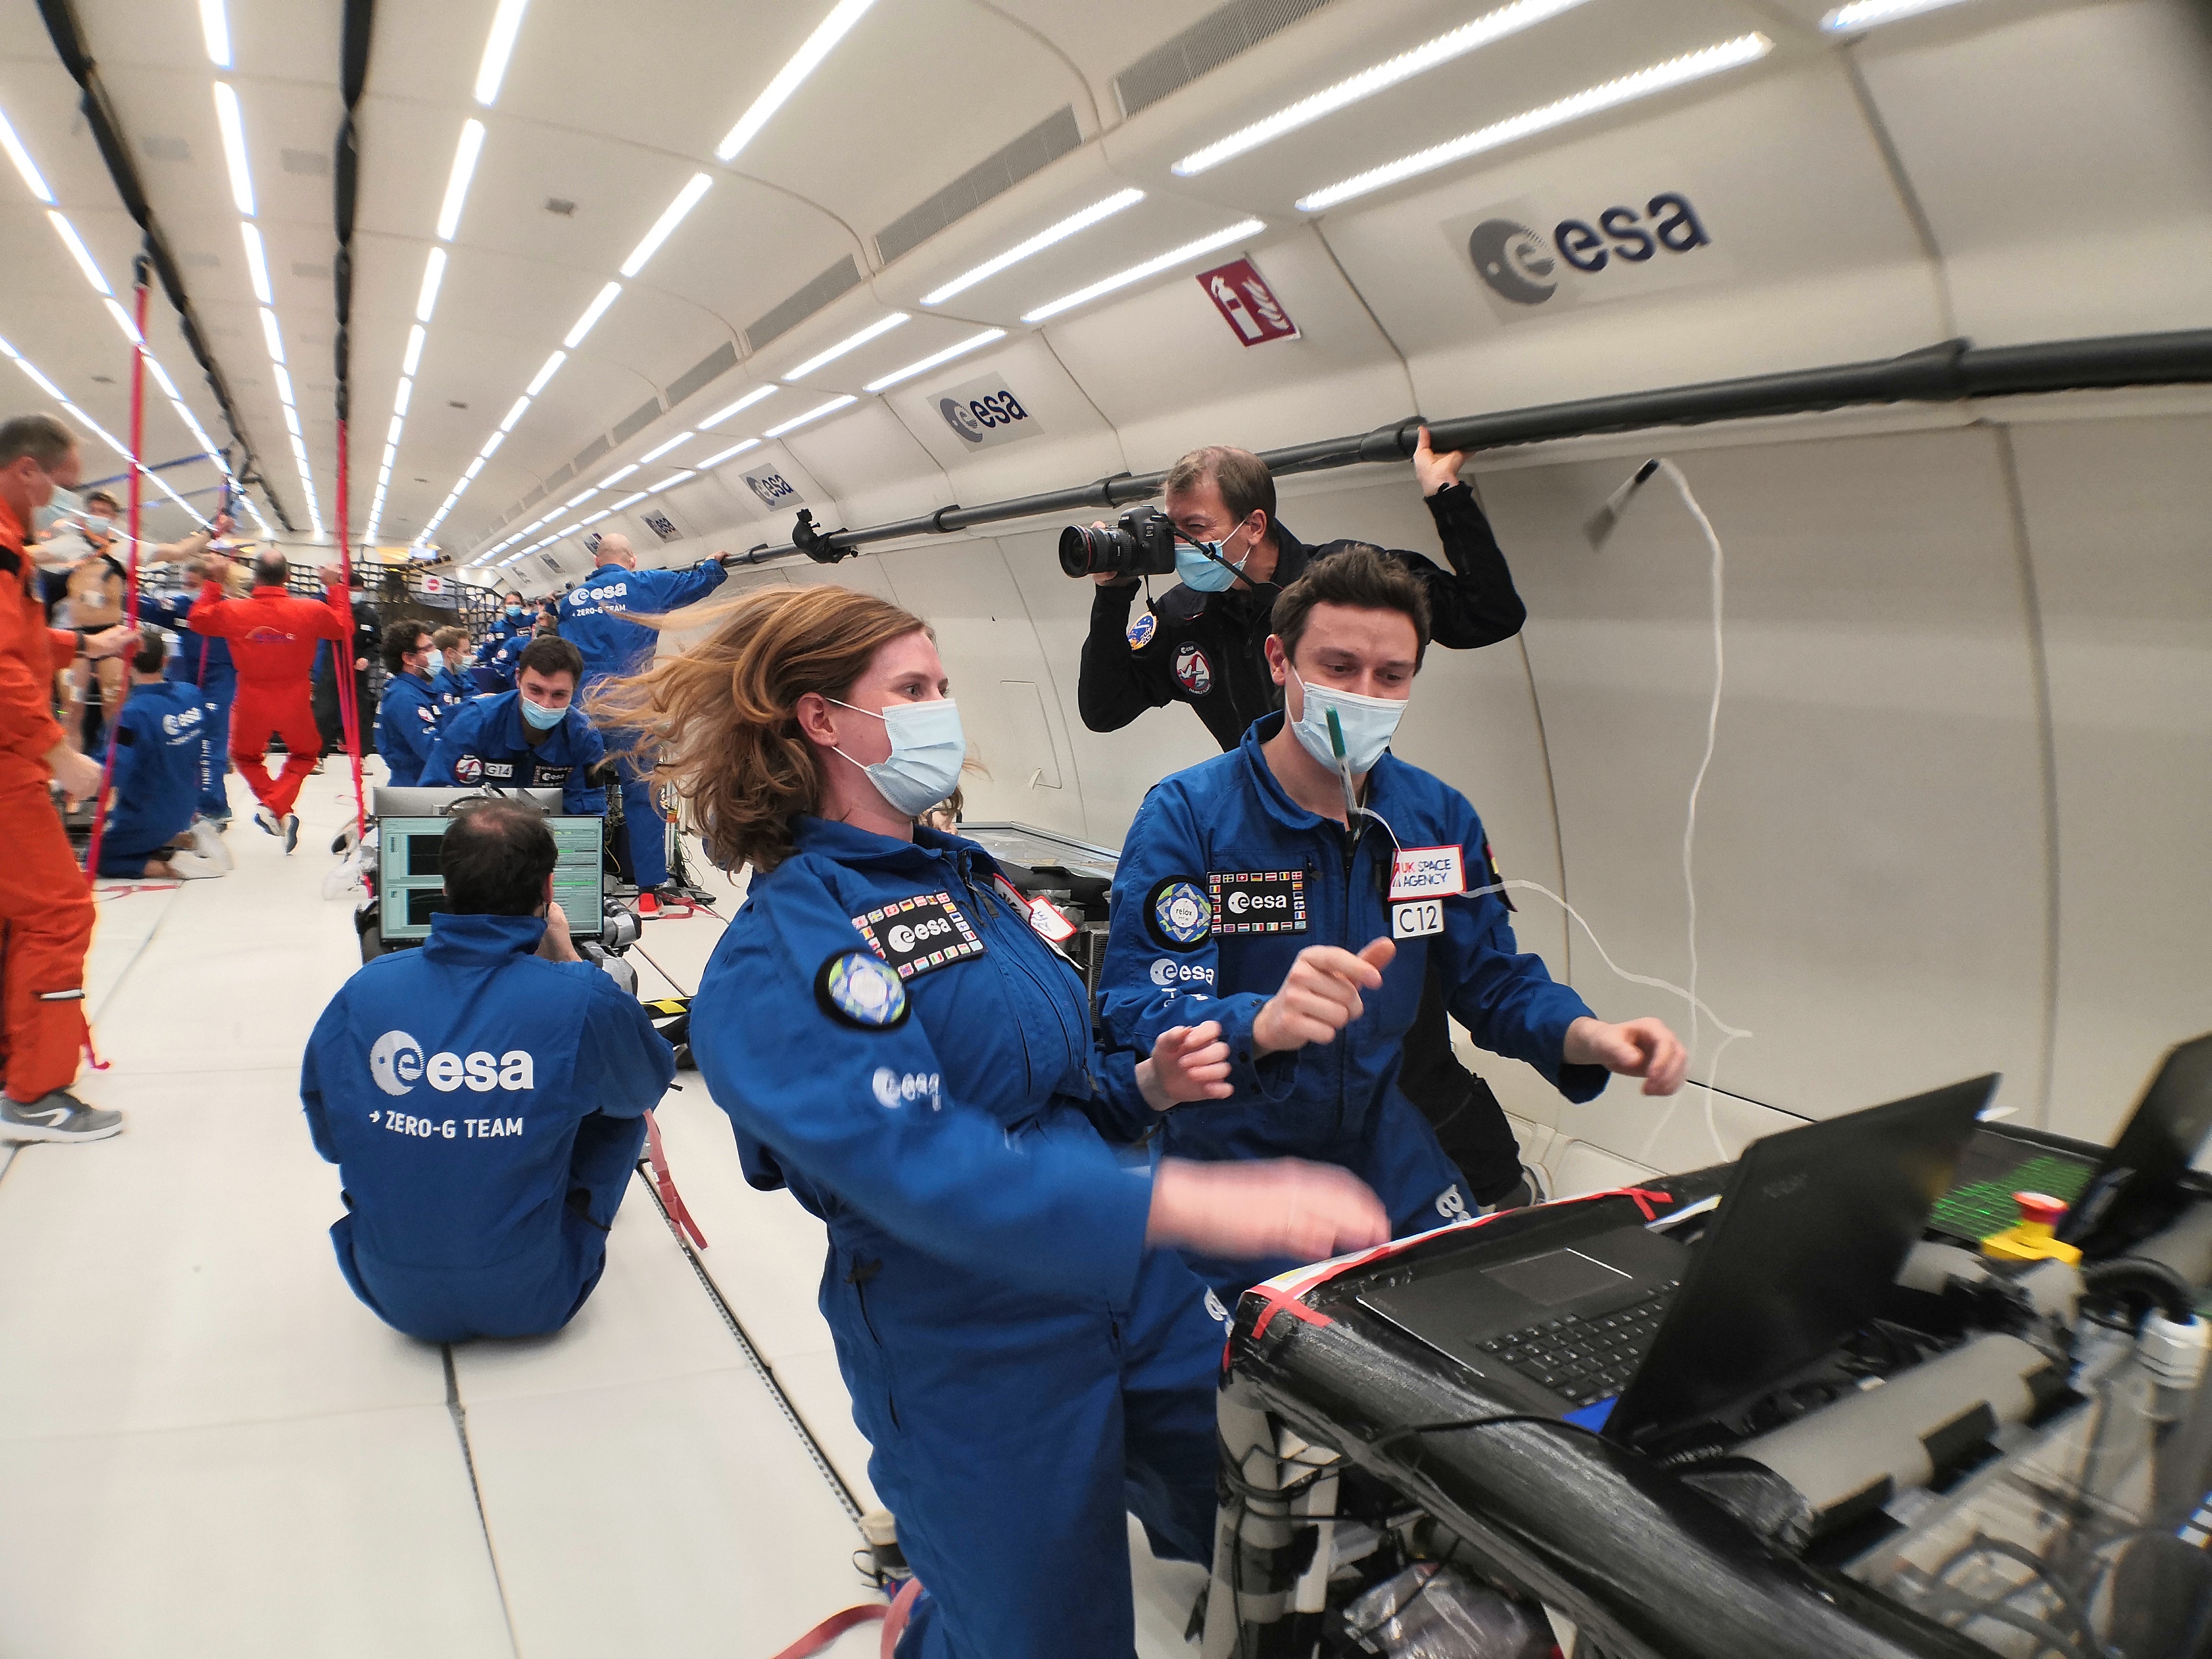 La Dra. Beth Lomax y sus colegas de la ESA preparan un experimento para extraer oxígeno del suelo lunar a bordo de un avión en una inmersión pronunciada para simular las condiciones de microgravedad